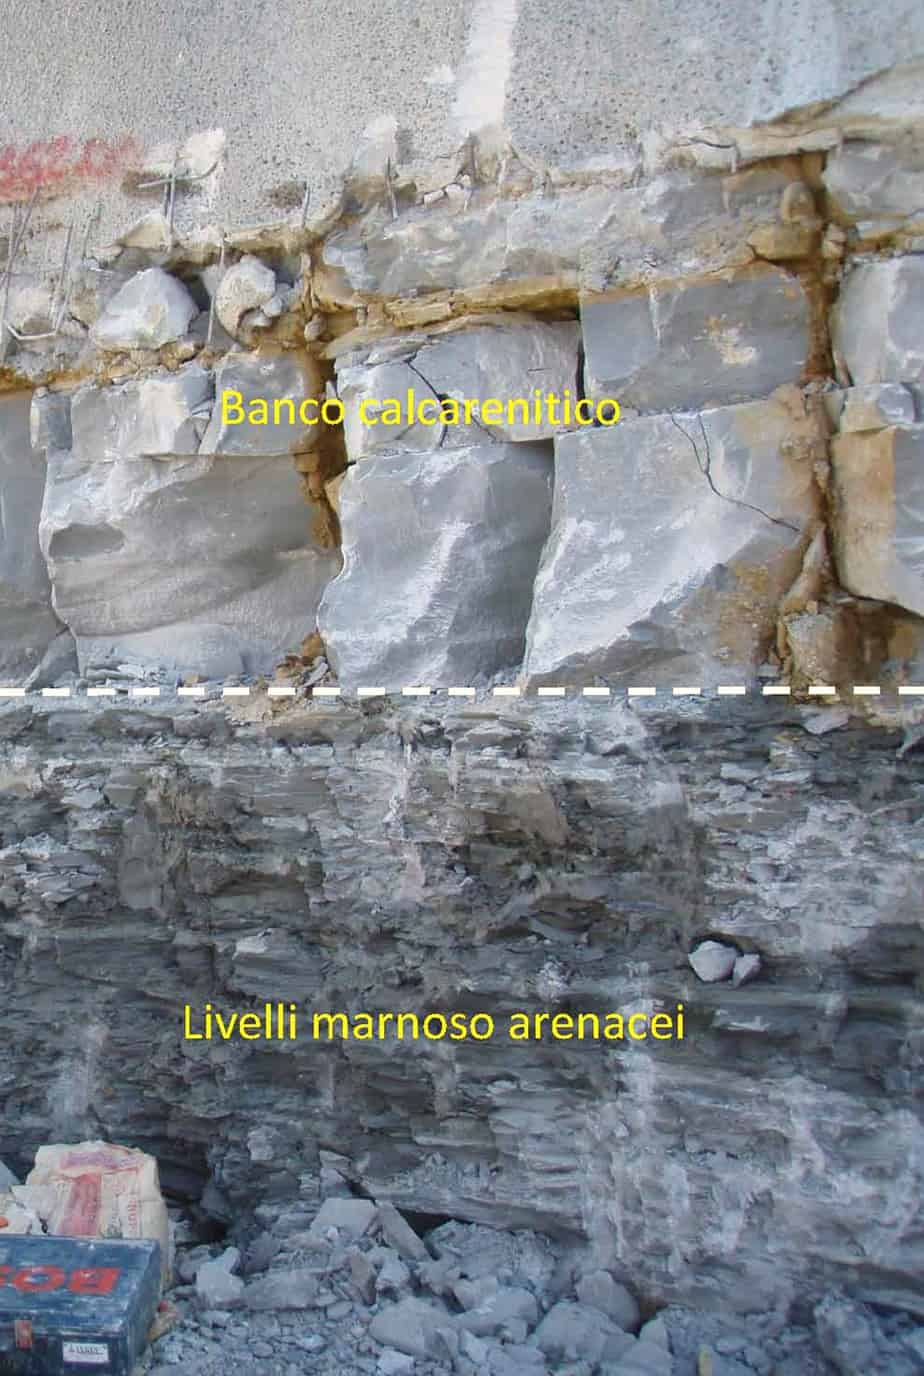 La sezione stratigrafica in prossimità degli imbocchi della galleria